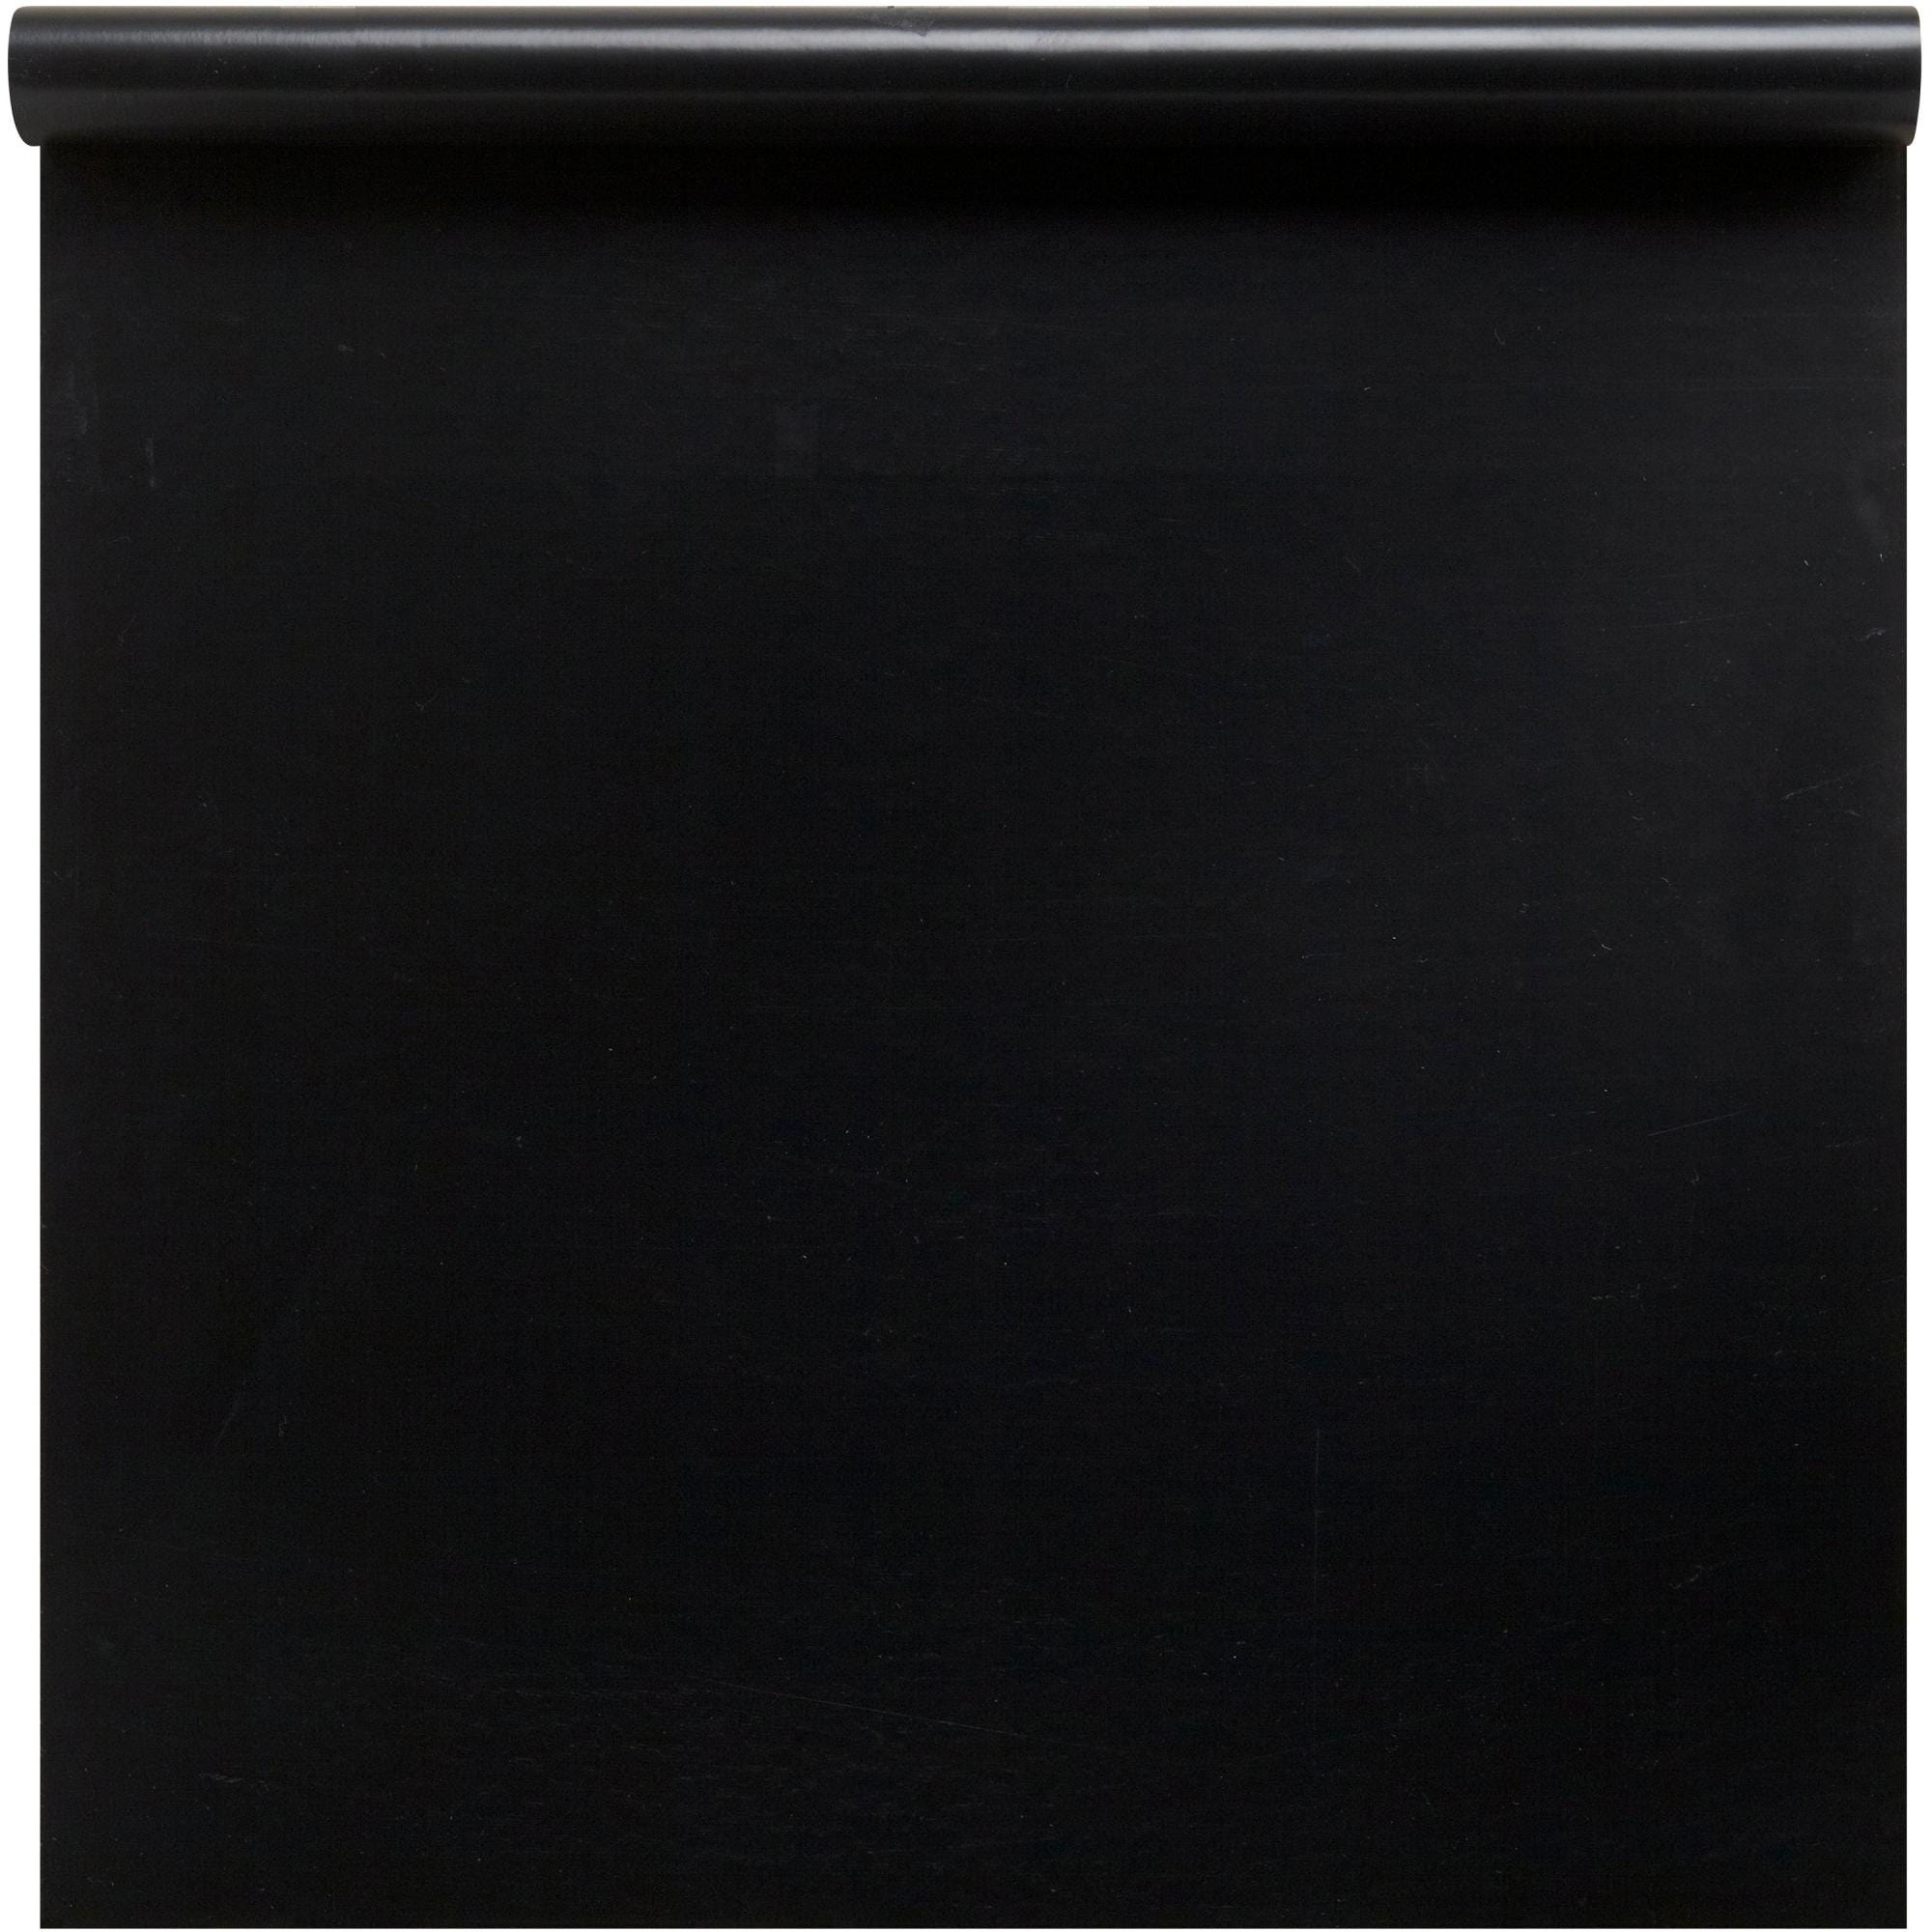 154 ALFA UV-Black - Ruban adhésif noir pour façades - intérieur / extérieur